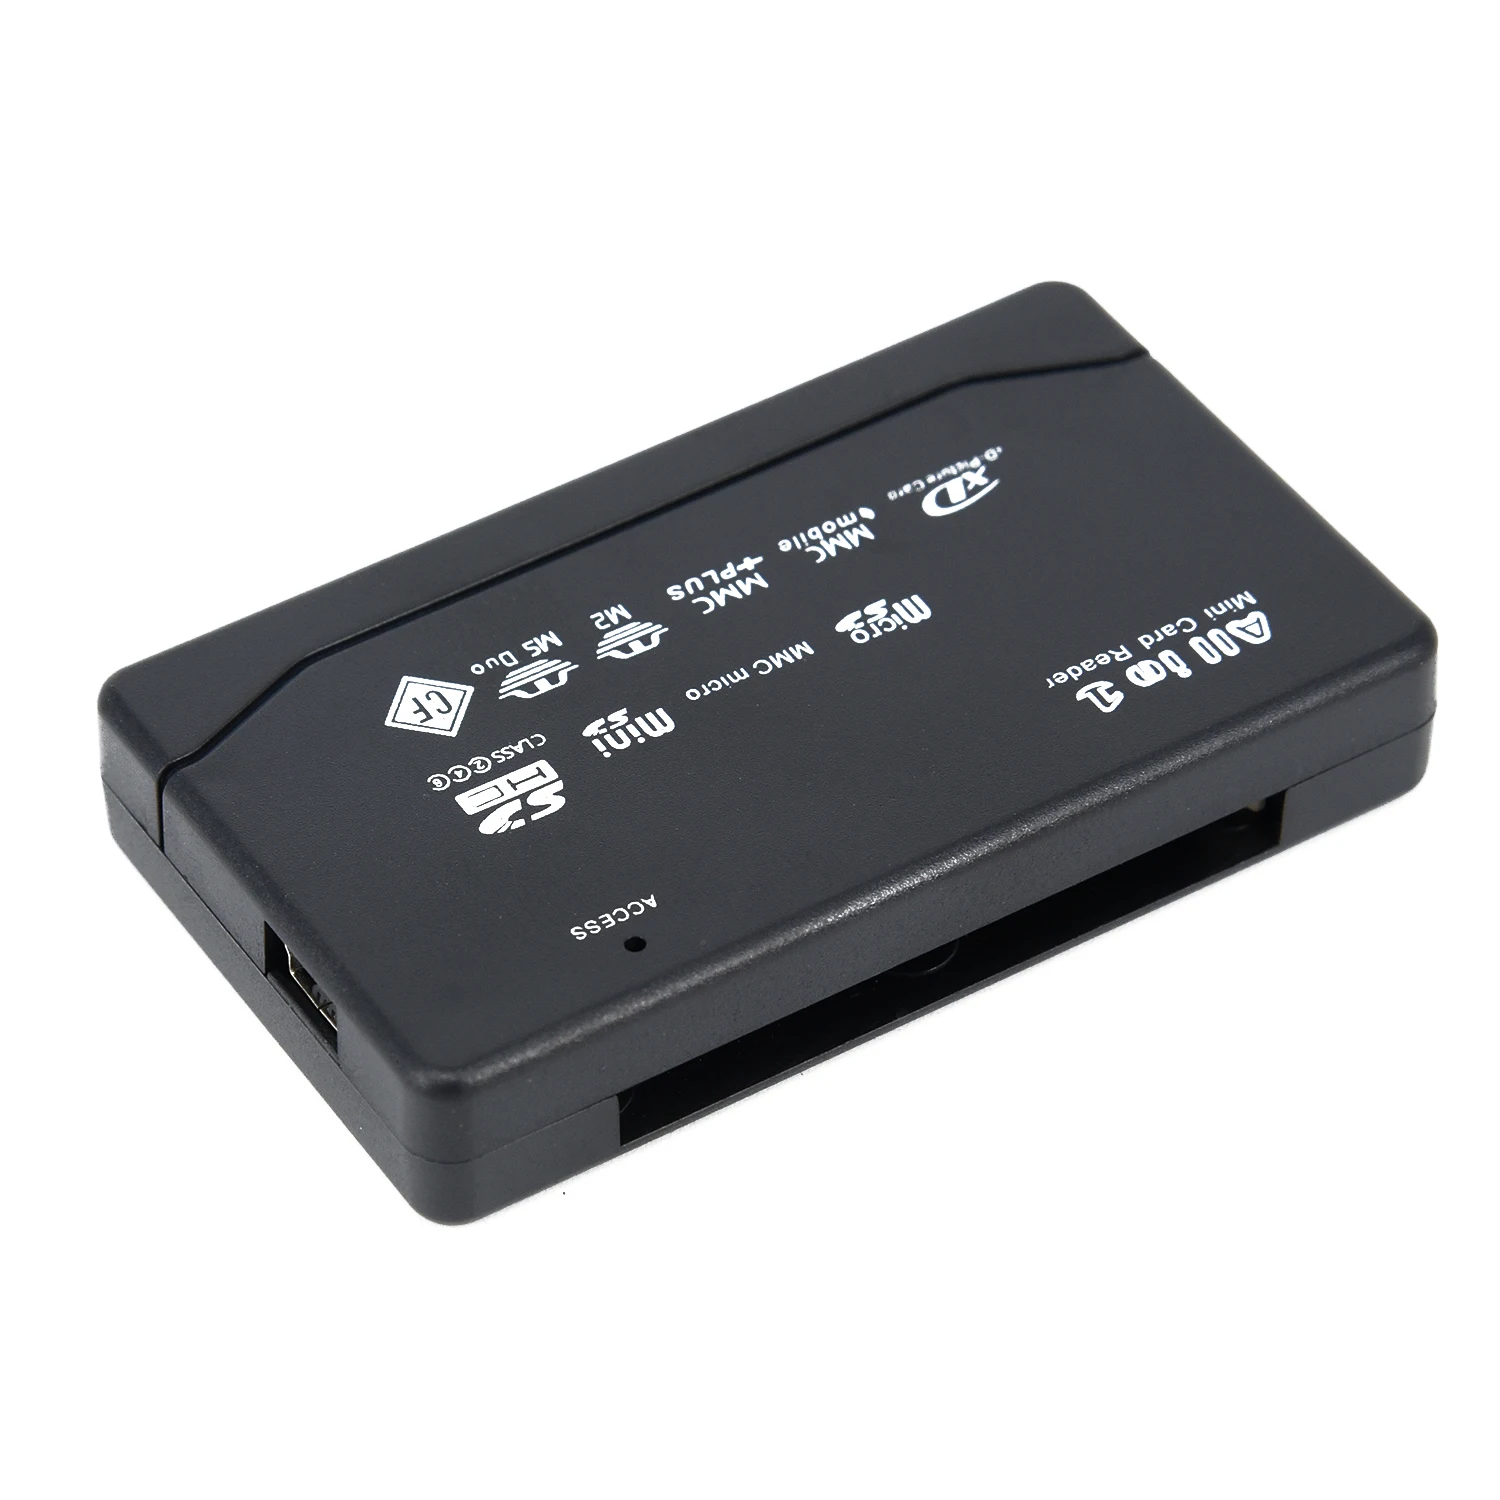 Универсальный все В1 считыватель карт памяти SD SDHC Mini Micro M2 MMC TF CF MS считыватель карт micro usb-кабель светодиодный индикатор питания/состояния